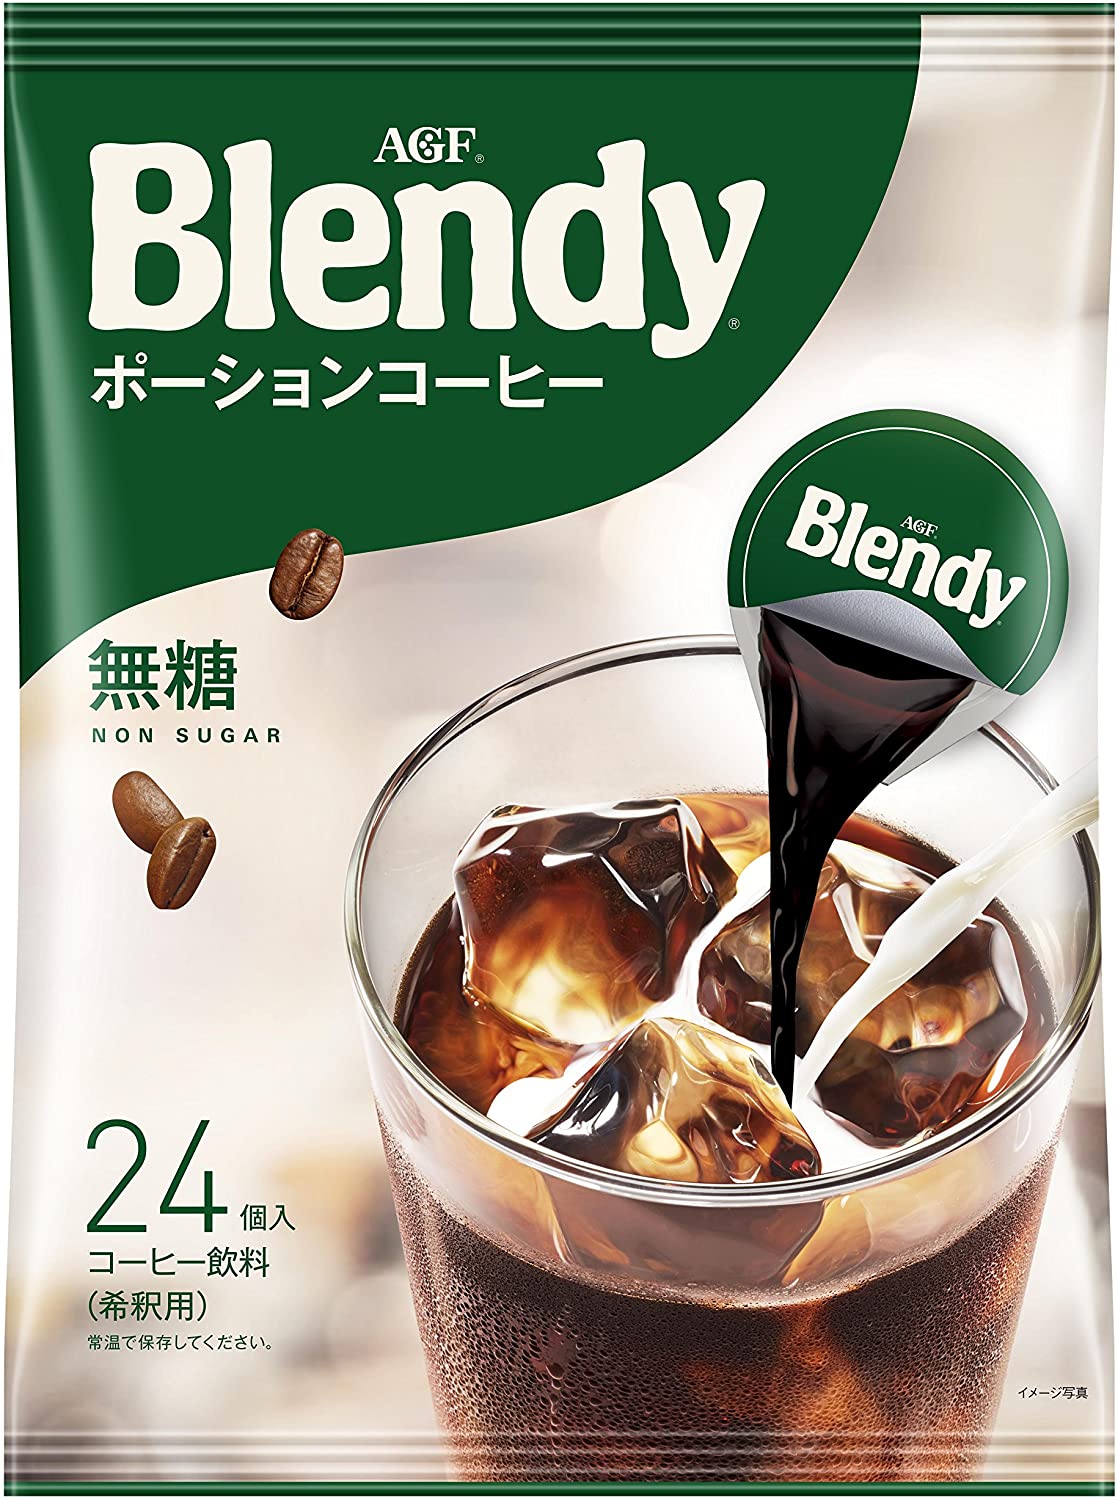 AGF Blendy無糖咖啡 24枚入-JPY￥748